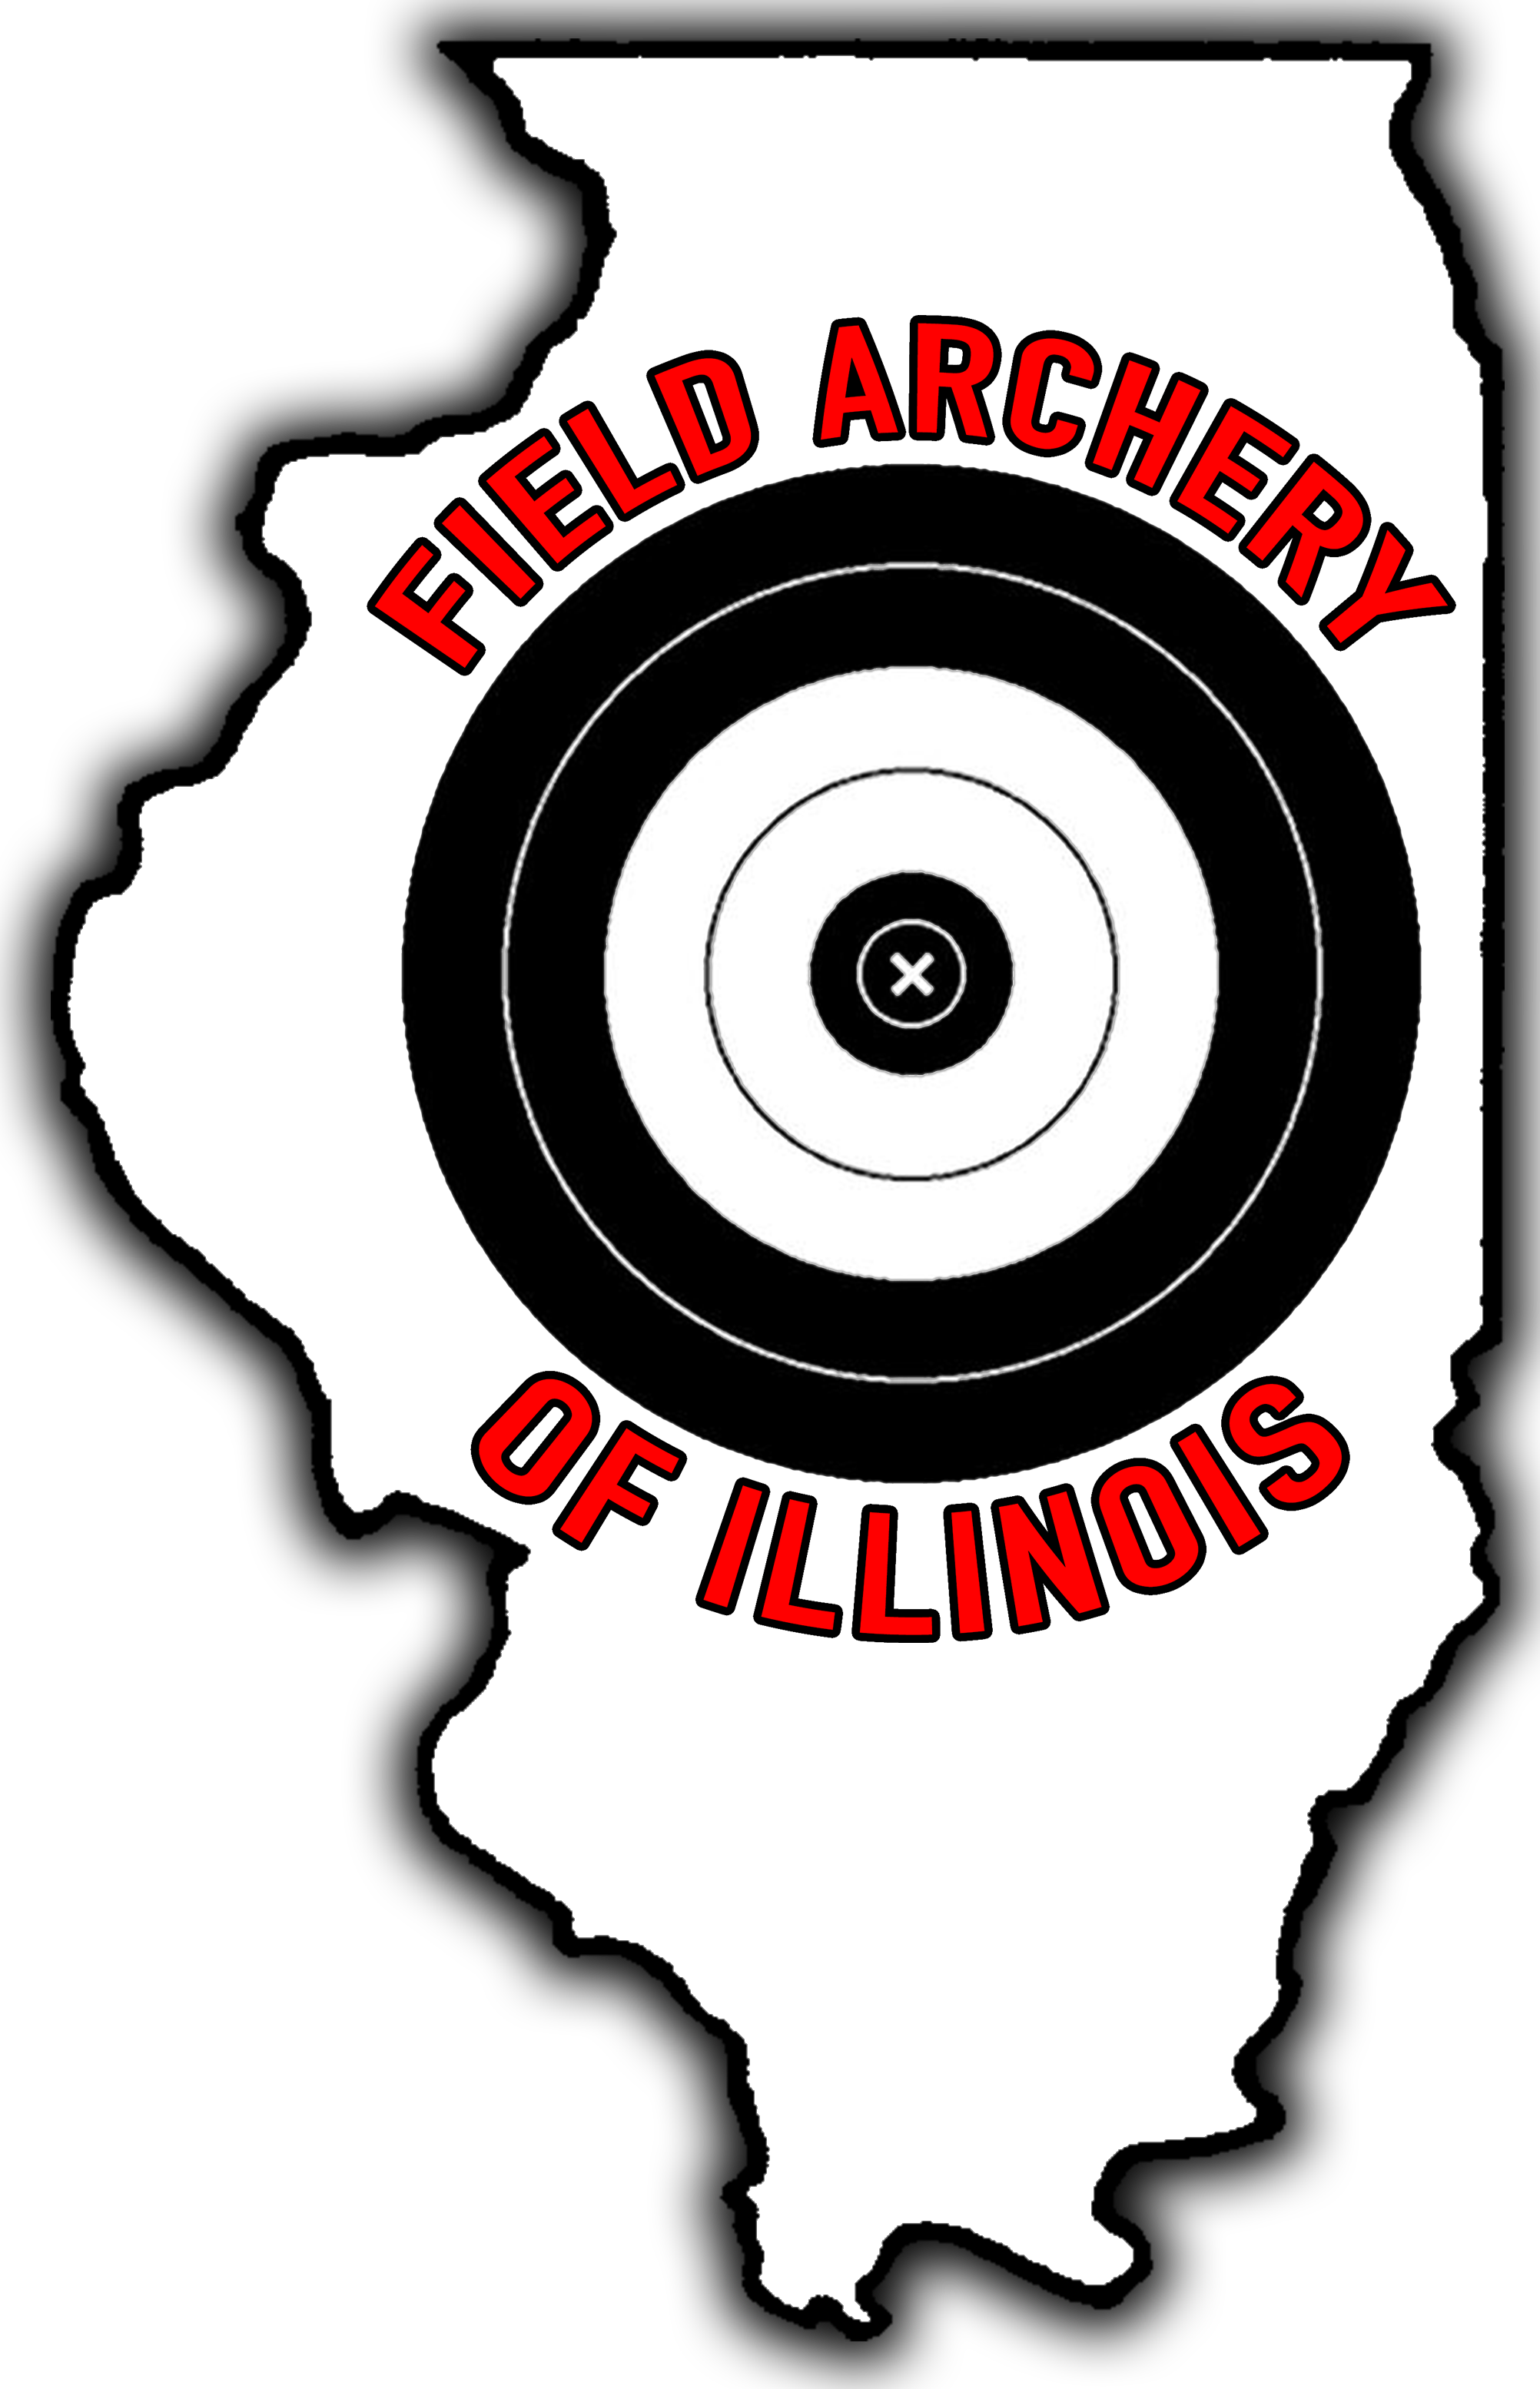 Field Archery of Illinois